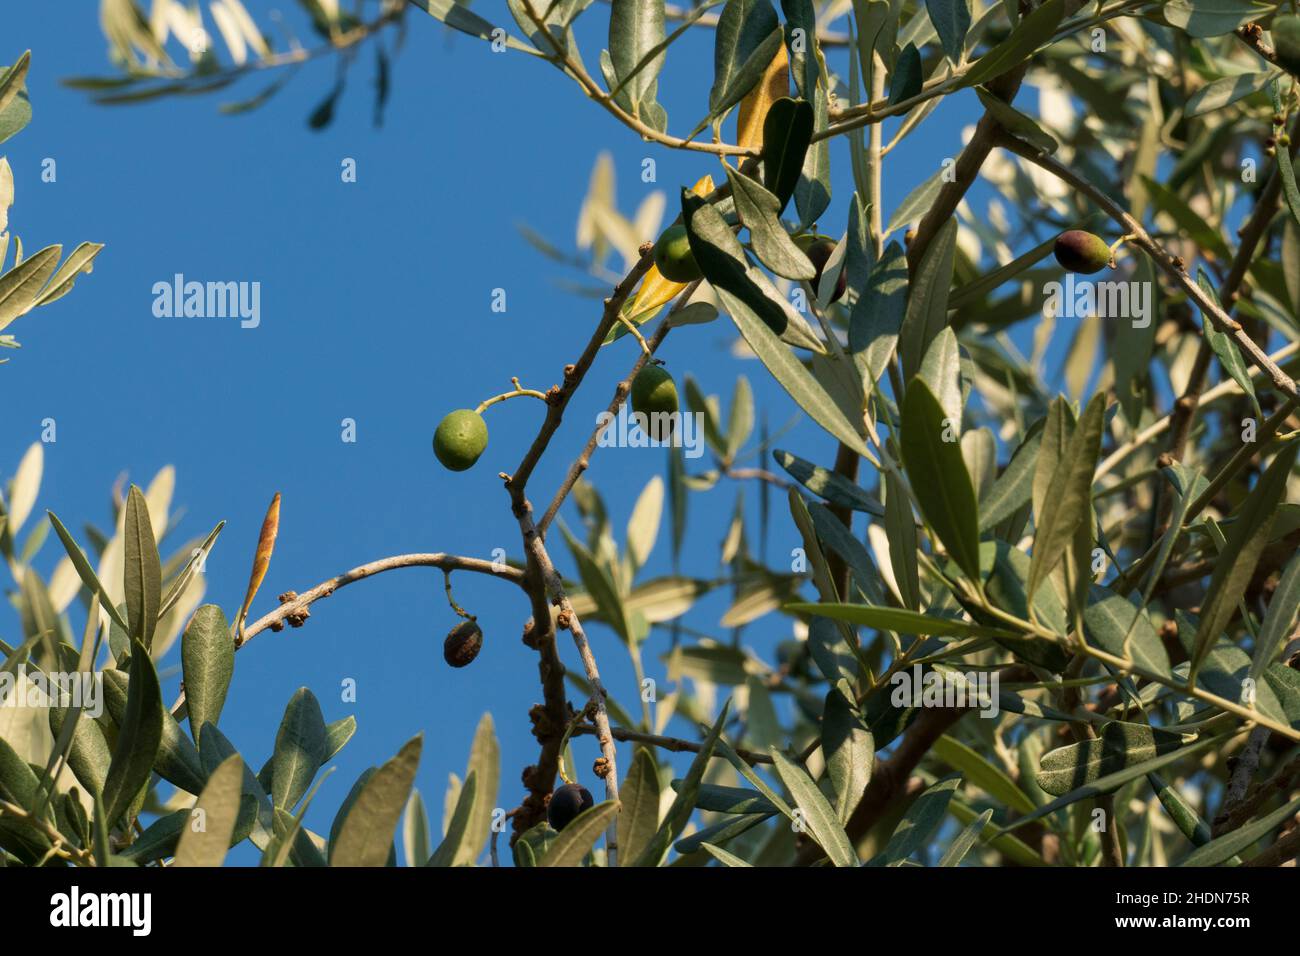 Oliven Früchte mit Blättern, hängen am Baum in einem Olivenhain Stock Photo